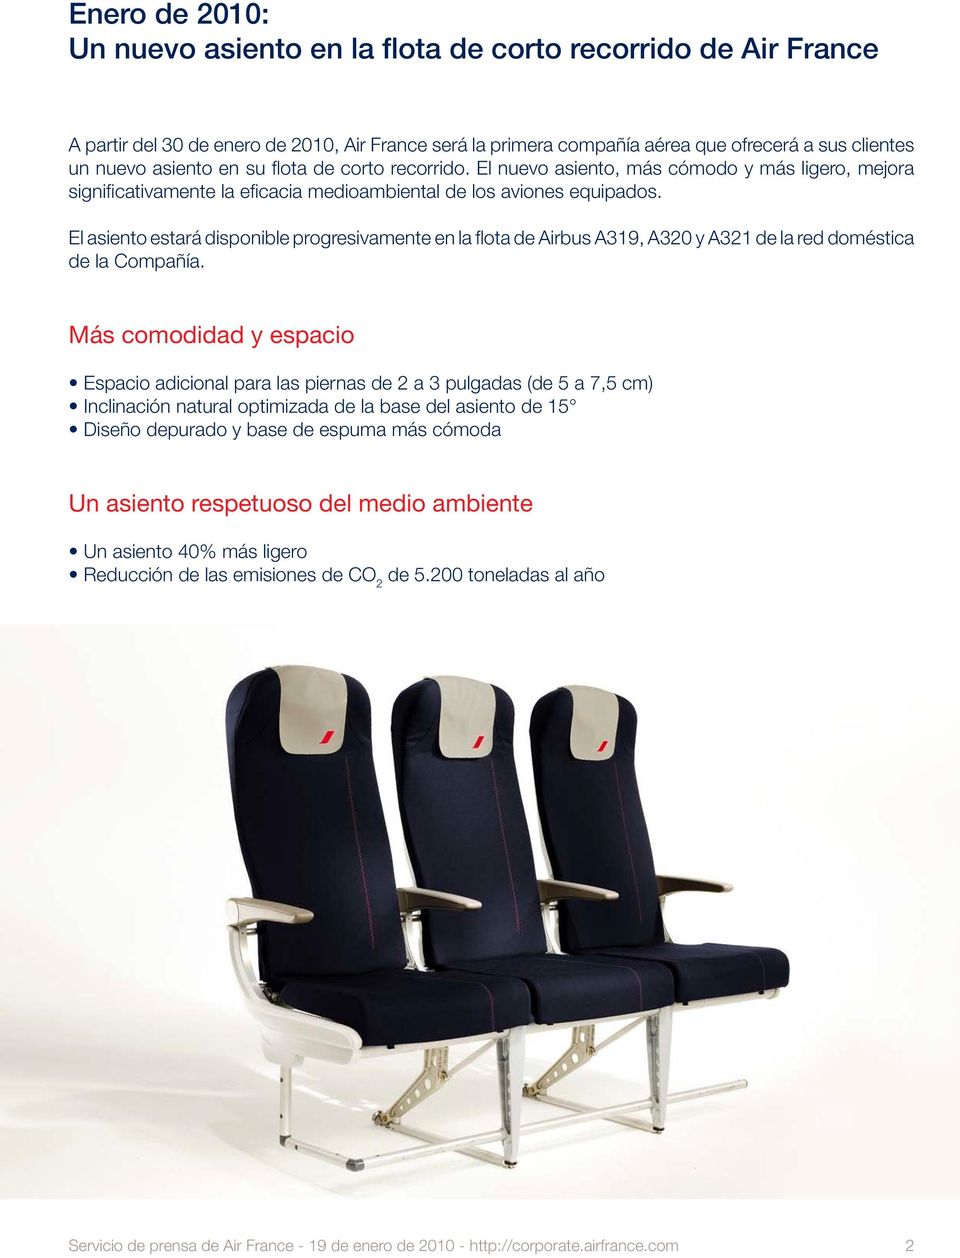 El asiento estará disponible progresivamente en la flota de Airbus A319, A320 y A321 de la red doméstica de la Compañía.